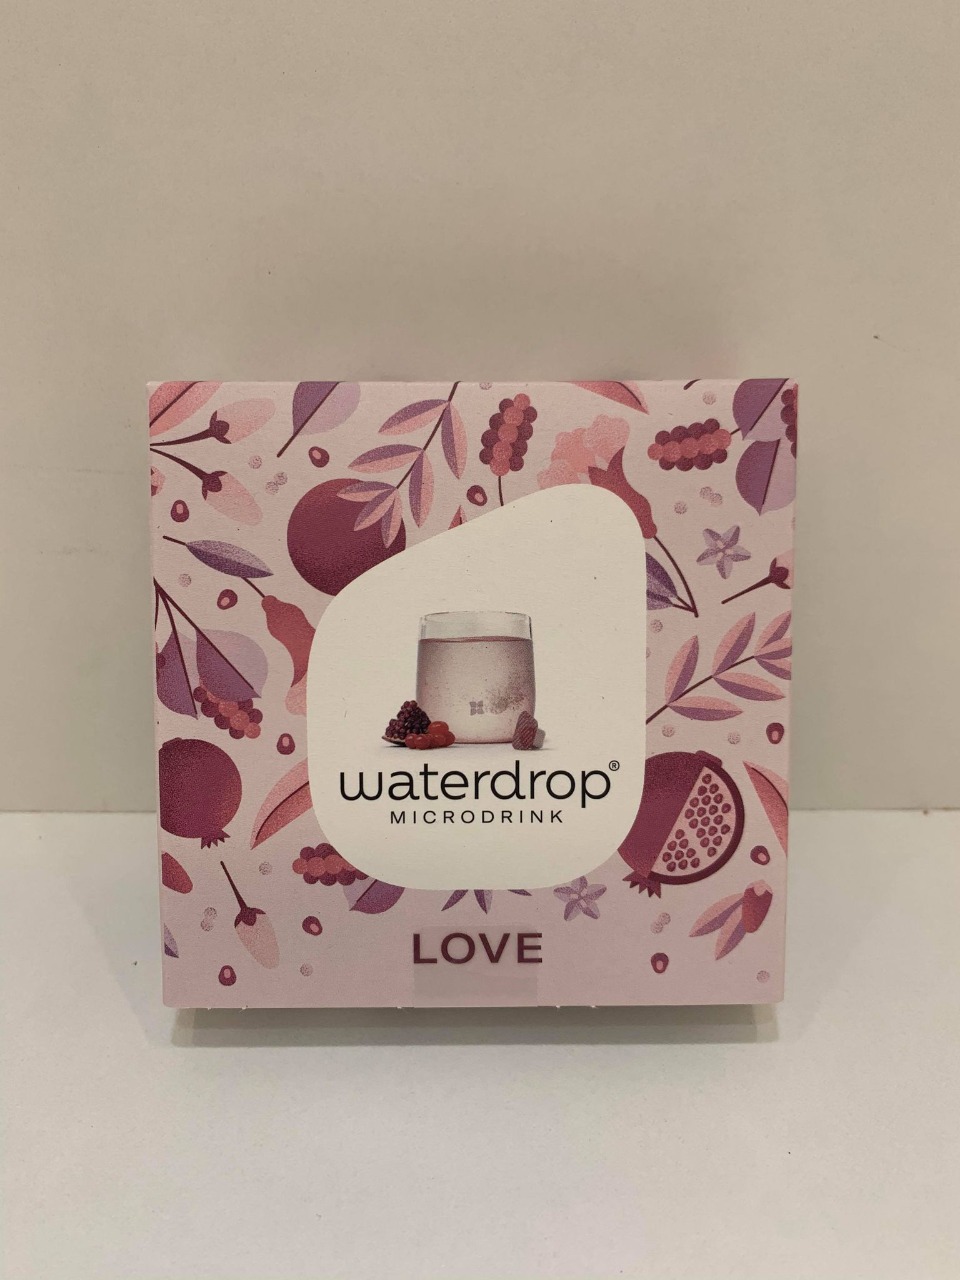 Waterdrop microdrink LOVE